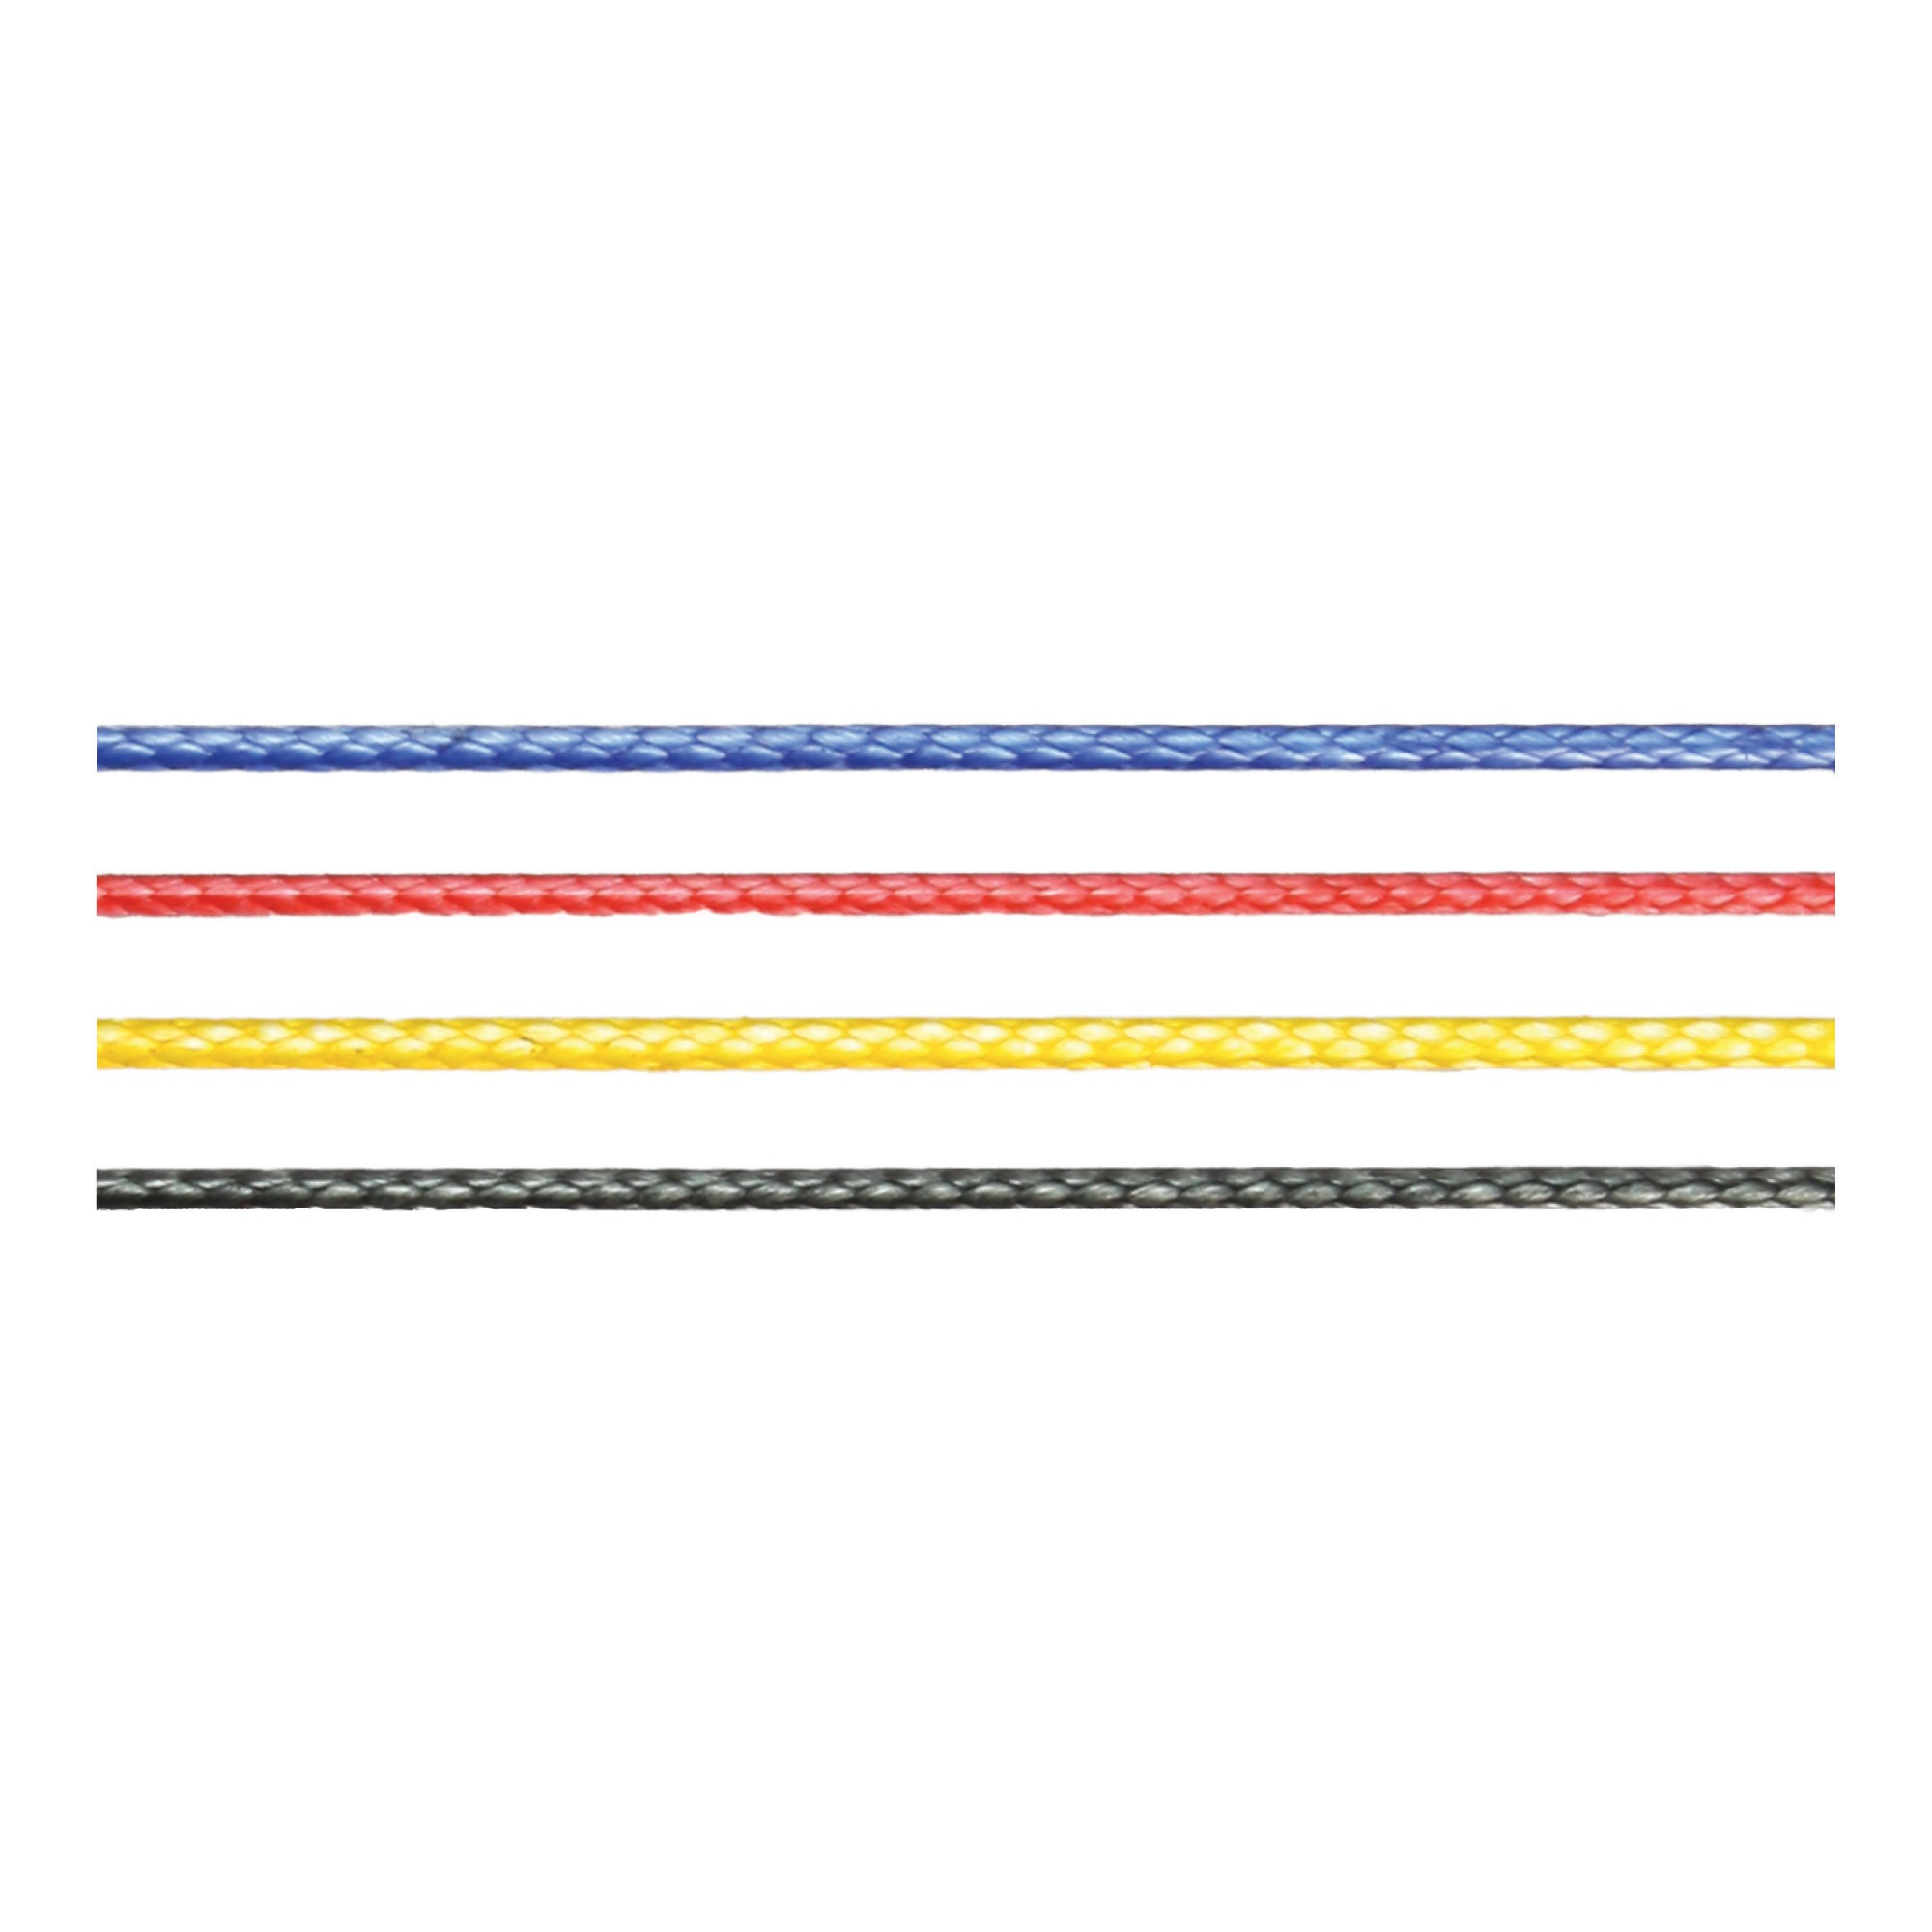 Трос MARLOW Kiteline Race синий 100 м диаметр 1,5 мм, Osculati 06.418.11BL